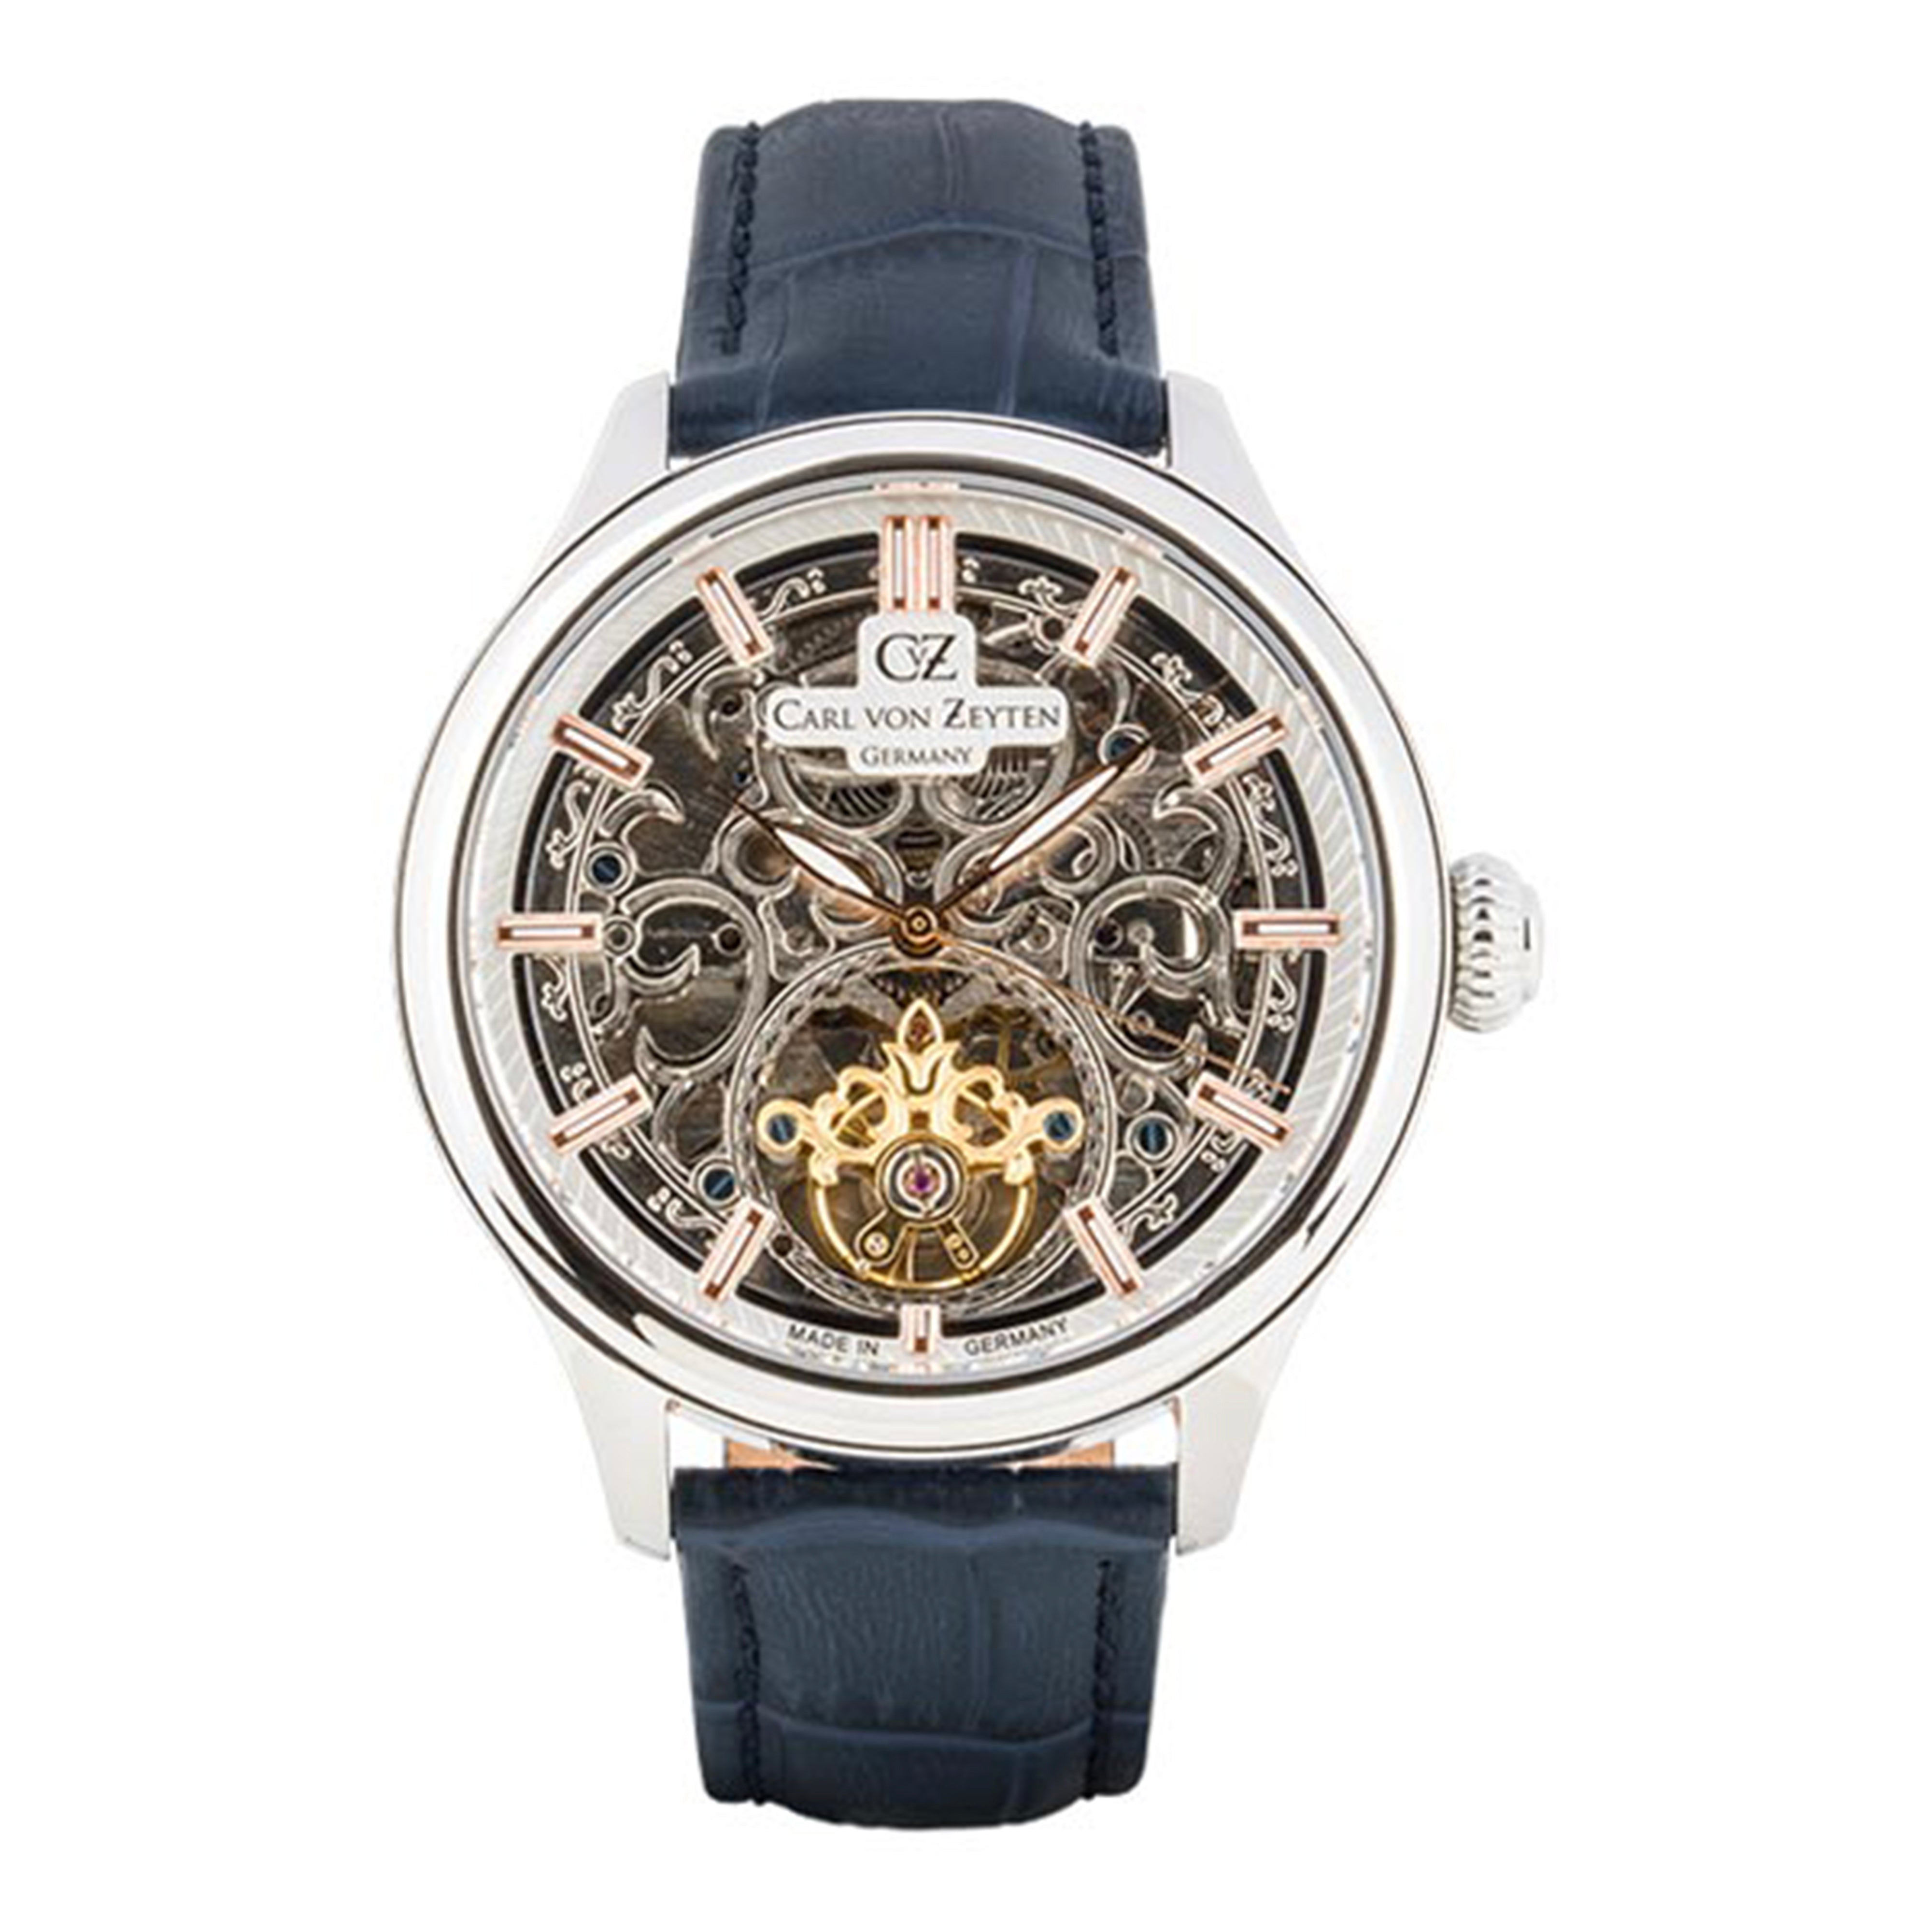 Carl von Zeyten St. Georgen Automatic Watch